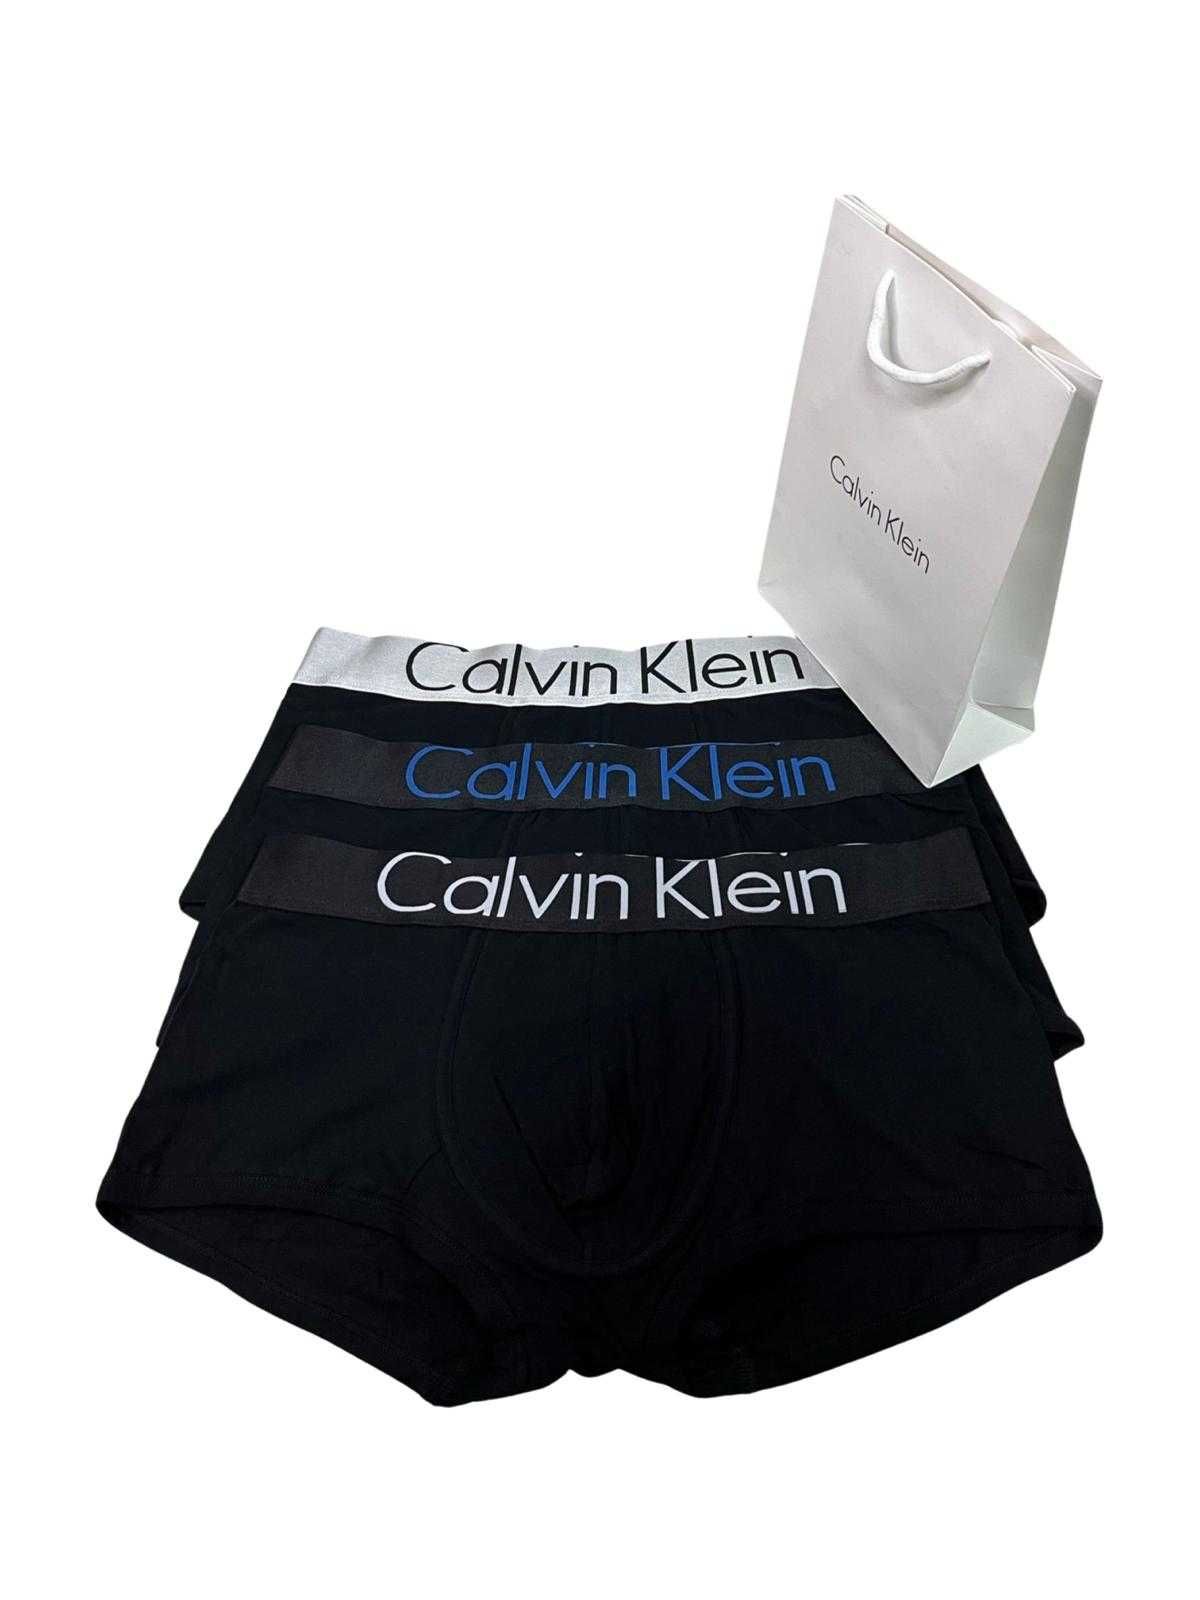 3 броя мъжки боксерки Calvin Klein !!!